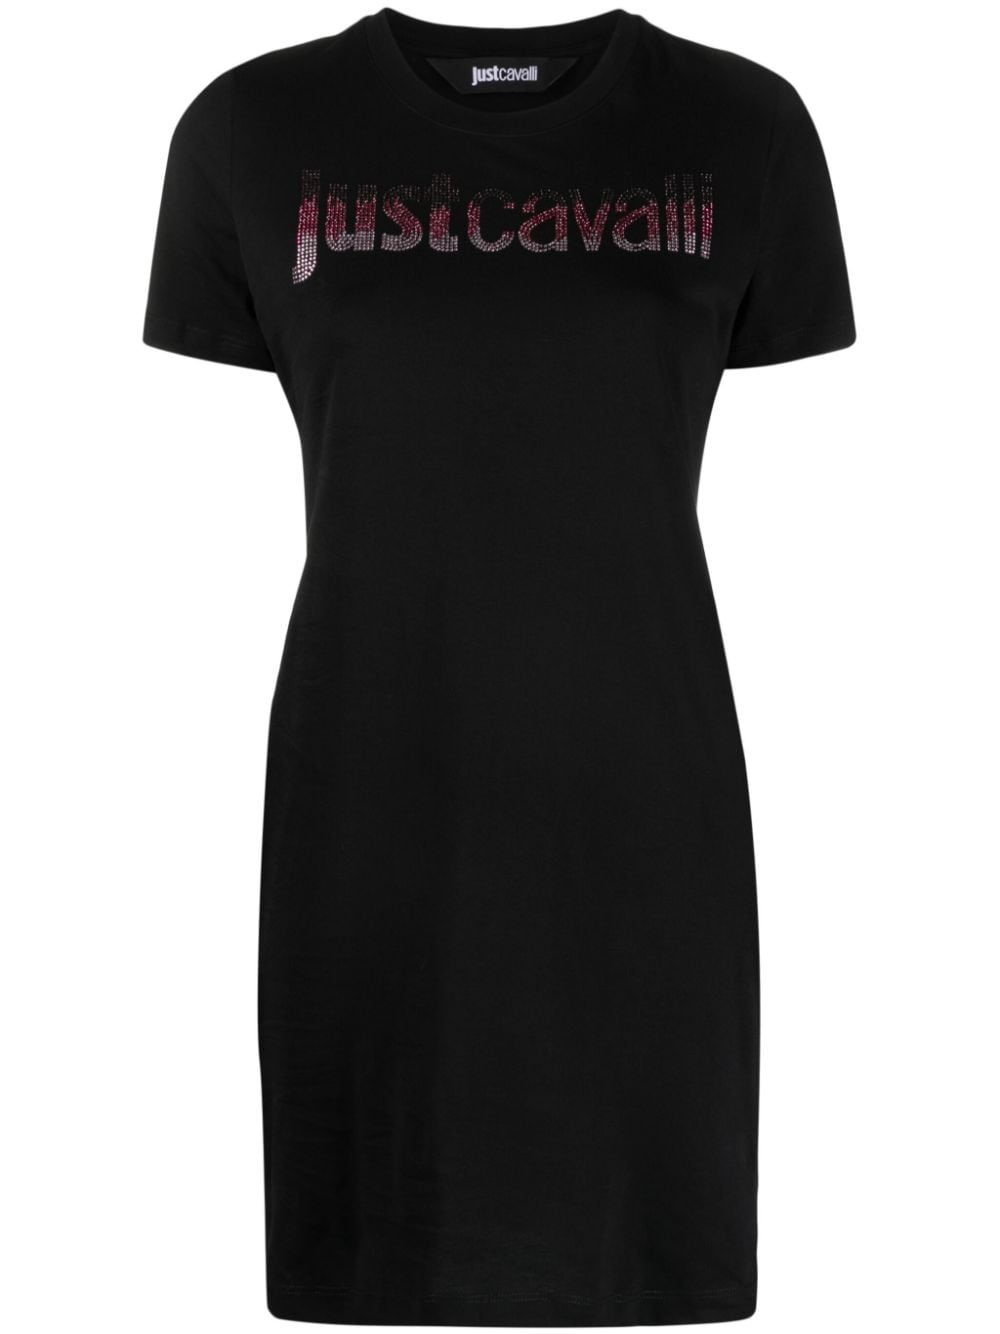 Just Cavalli cotton T-shirt minidress - Black von Just Cavalli